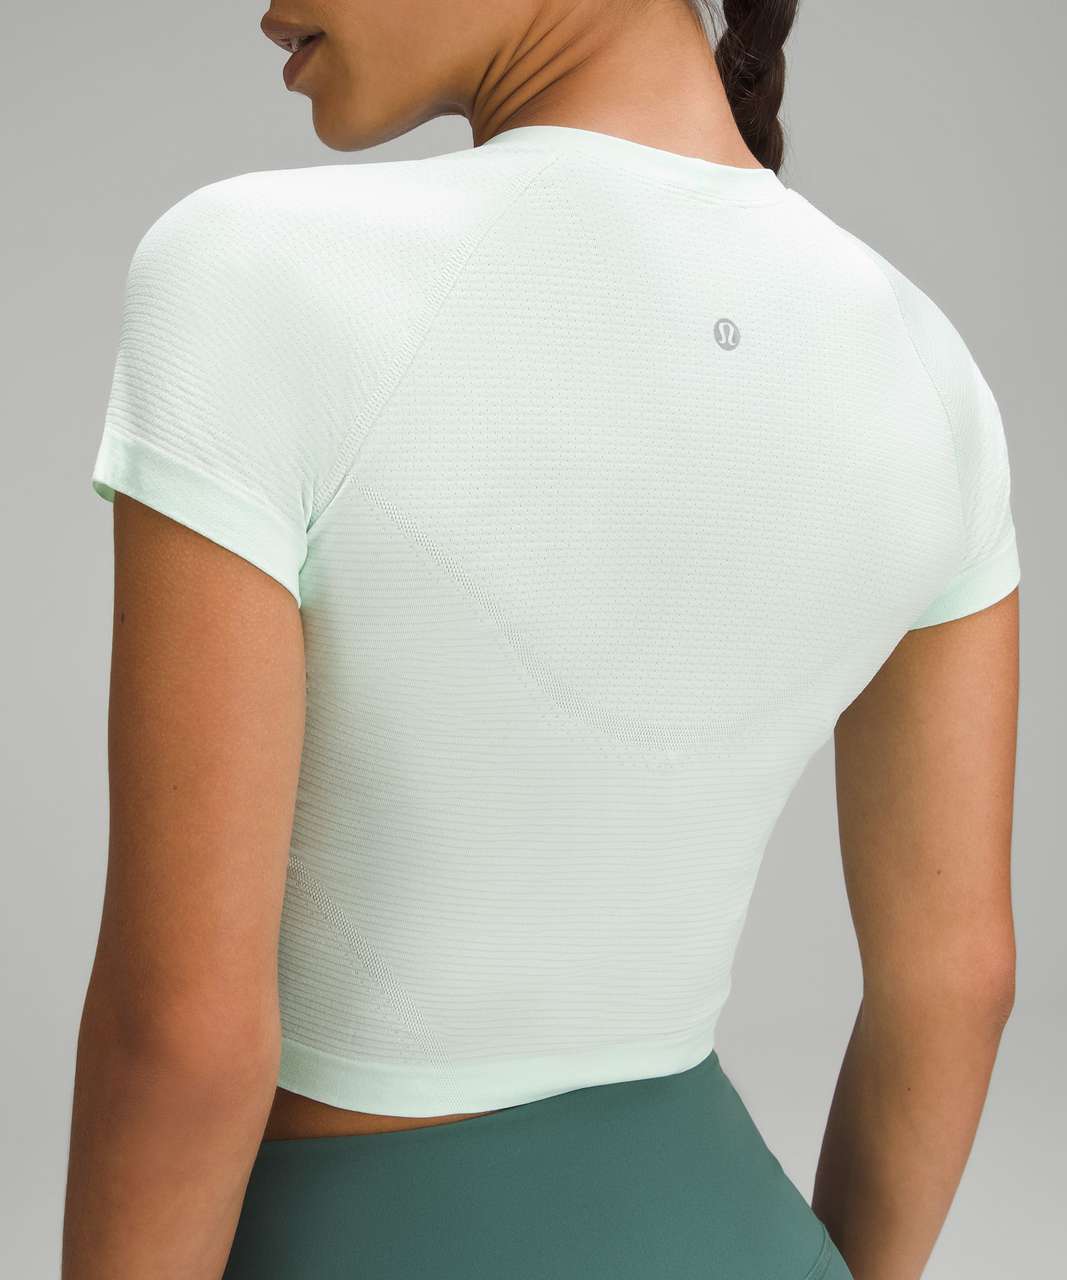 Lululemon athletica Swiftly Tech Cropped Short-Sleeve Shirt 2.0